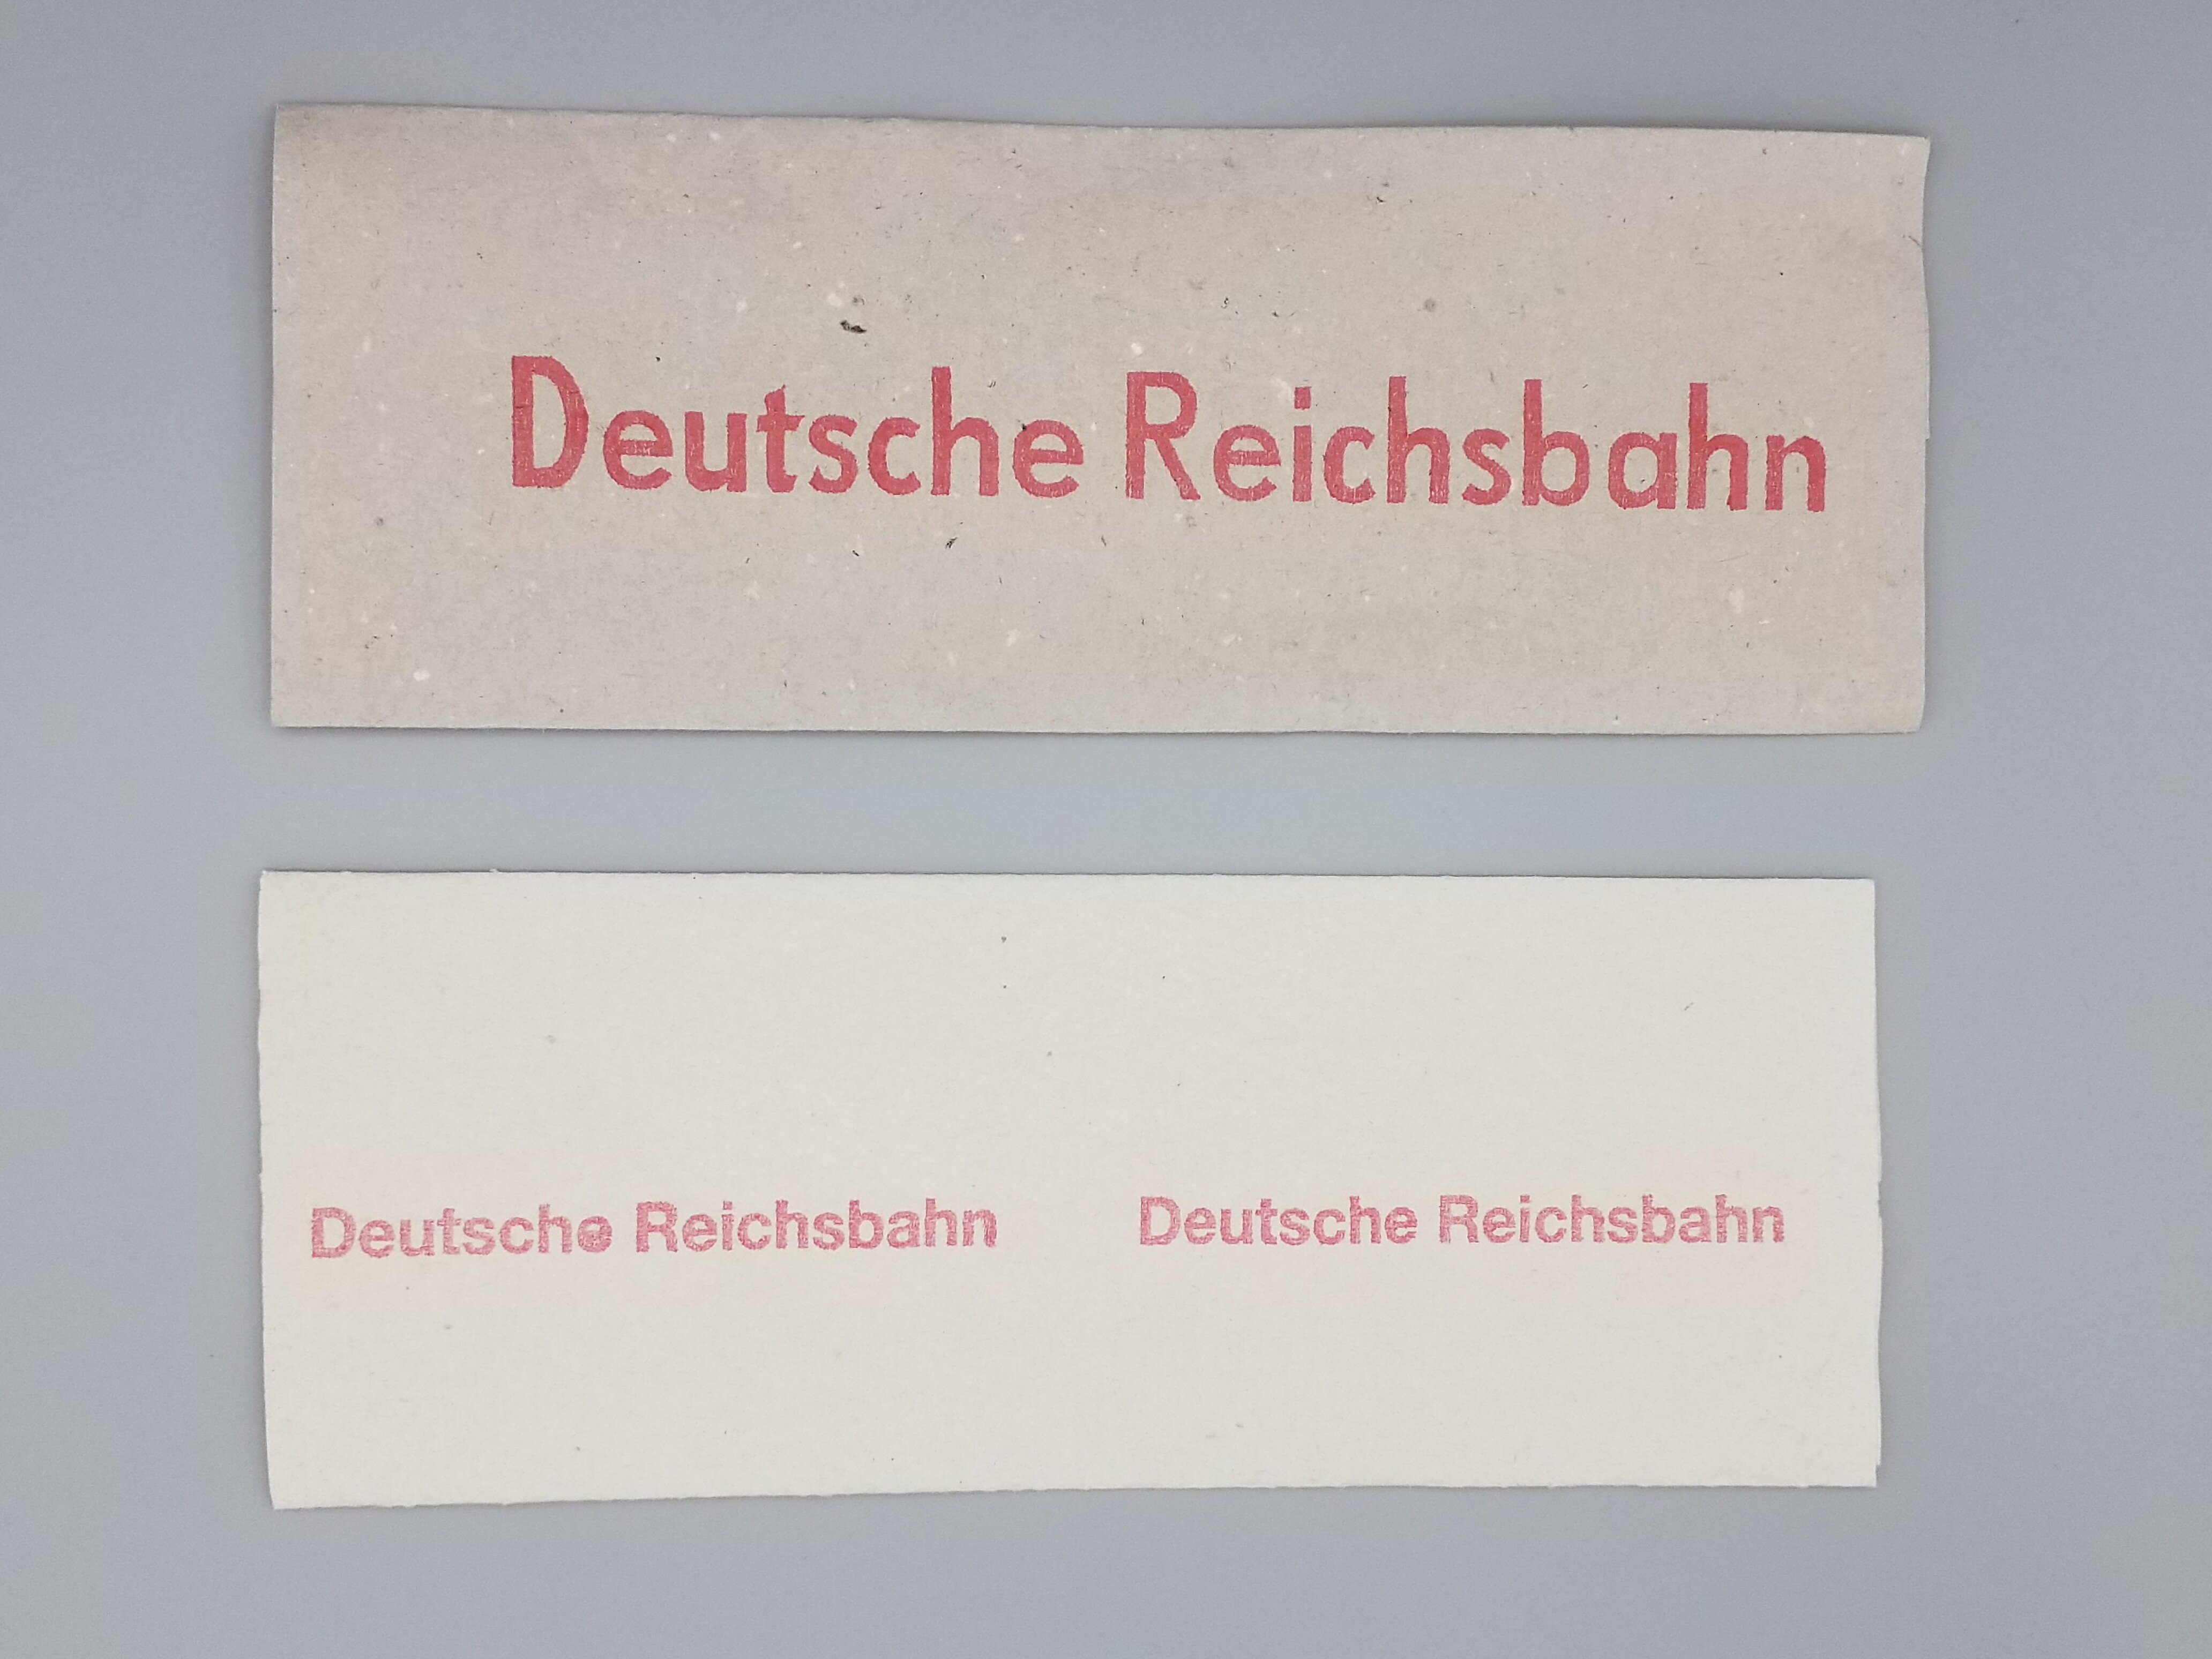 Deutsche Reichsbahn Papierhandtuch (Mobile Welten e.V. CC BY-SA)